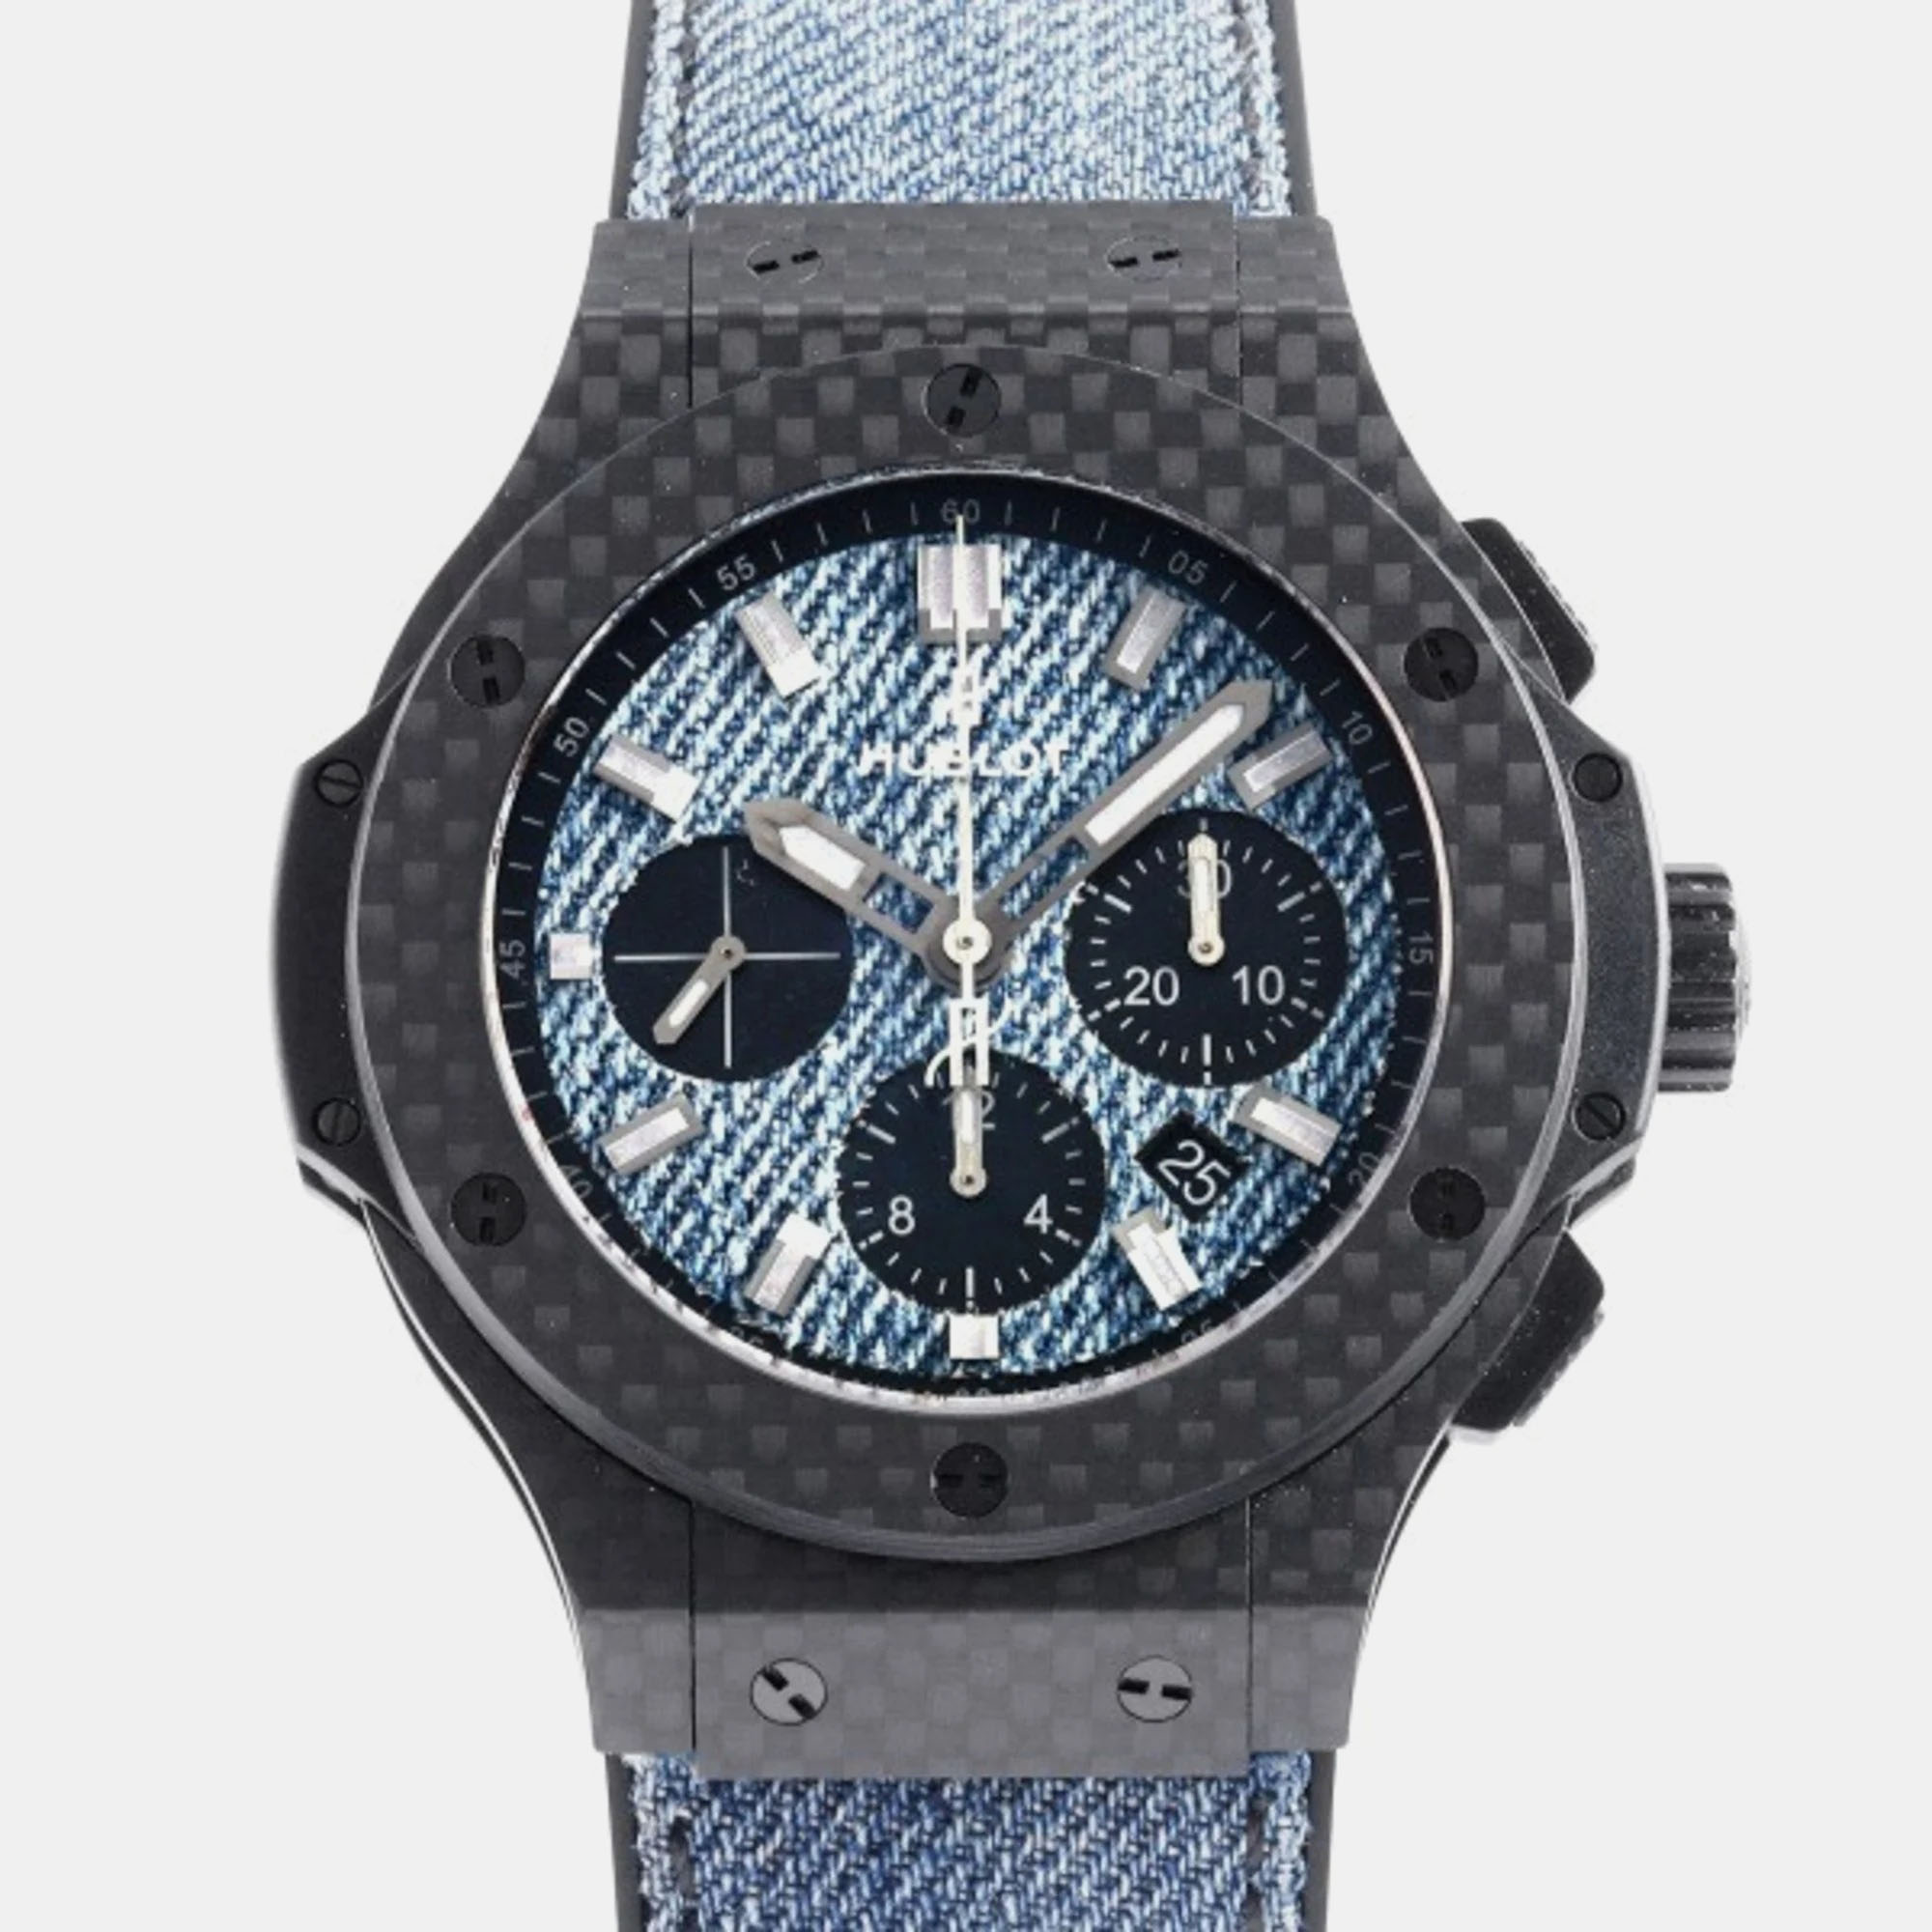 Pre-owned Hublot Blue Carbon Big Bang 301.qx.2740.nr.jeans16 Automatic Men's Wristwatch 44 Mm